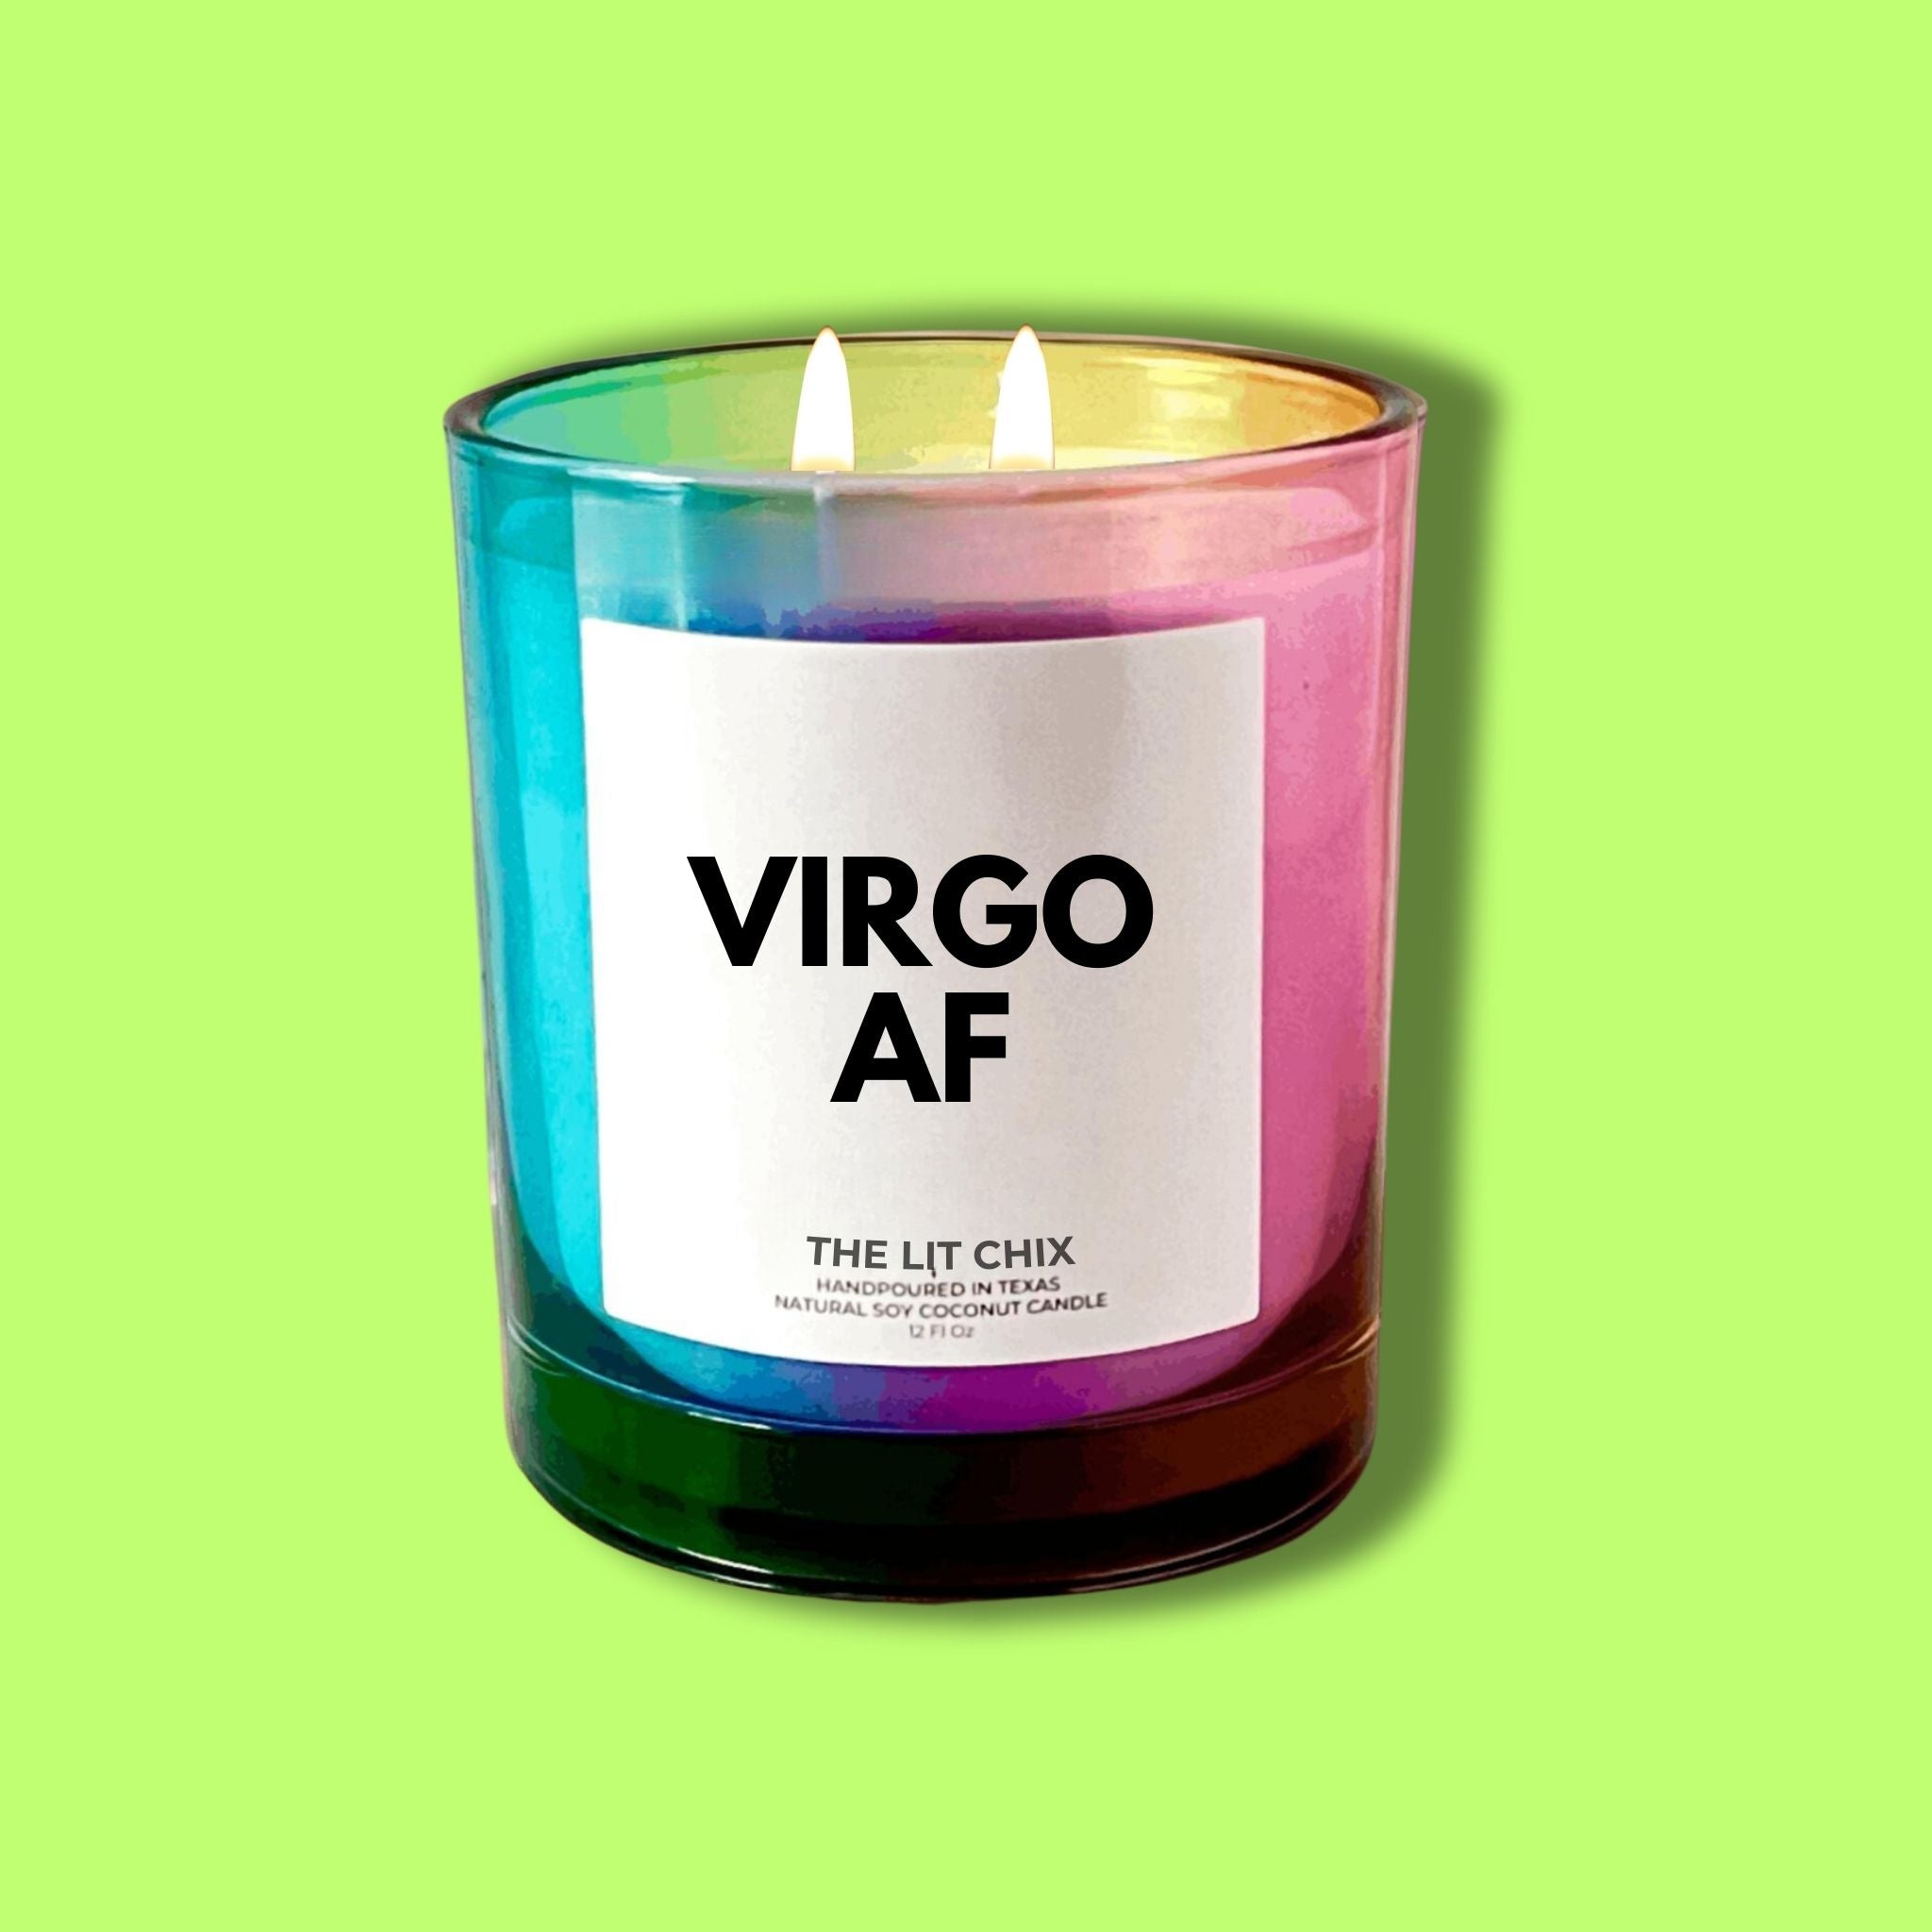 Virgo AF Candle